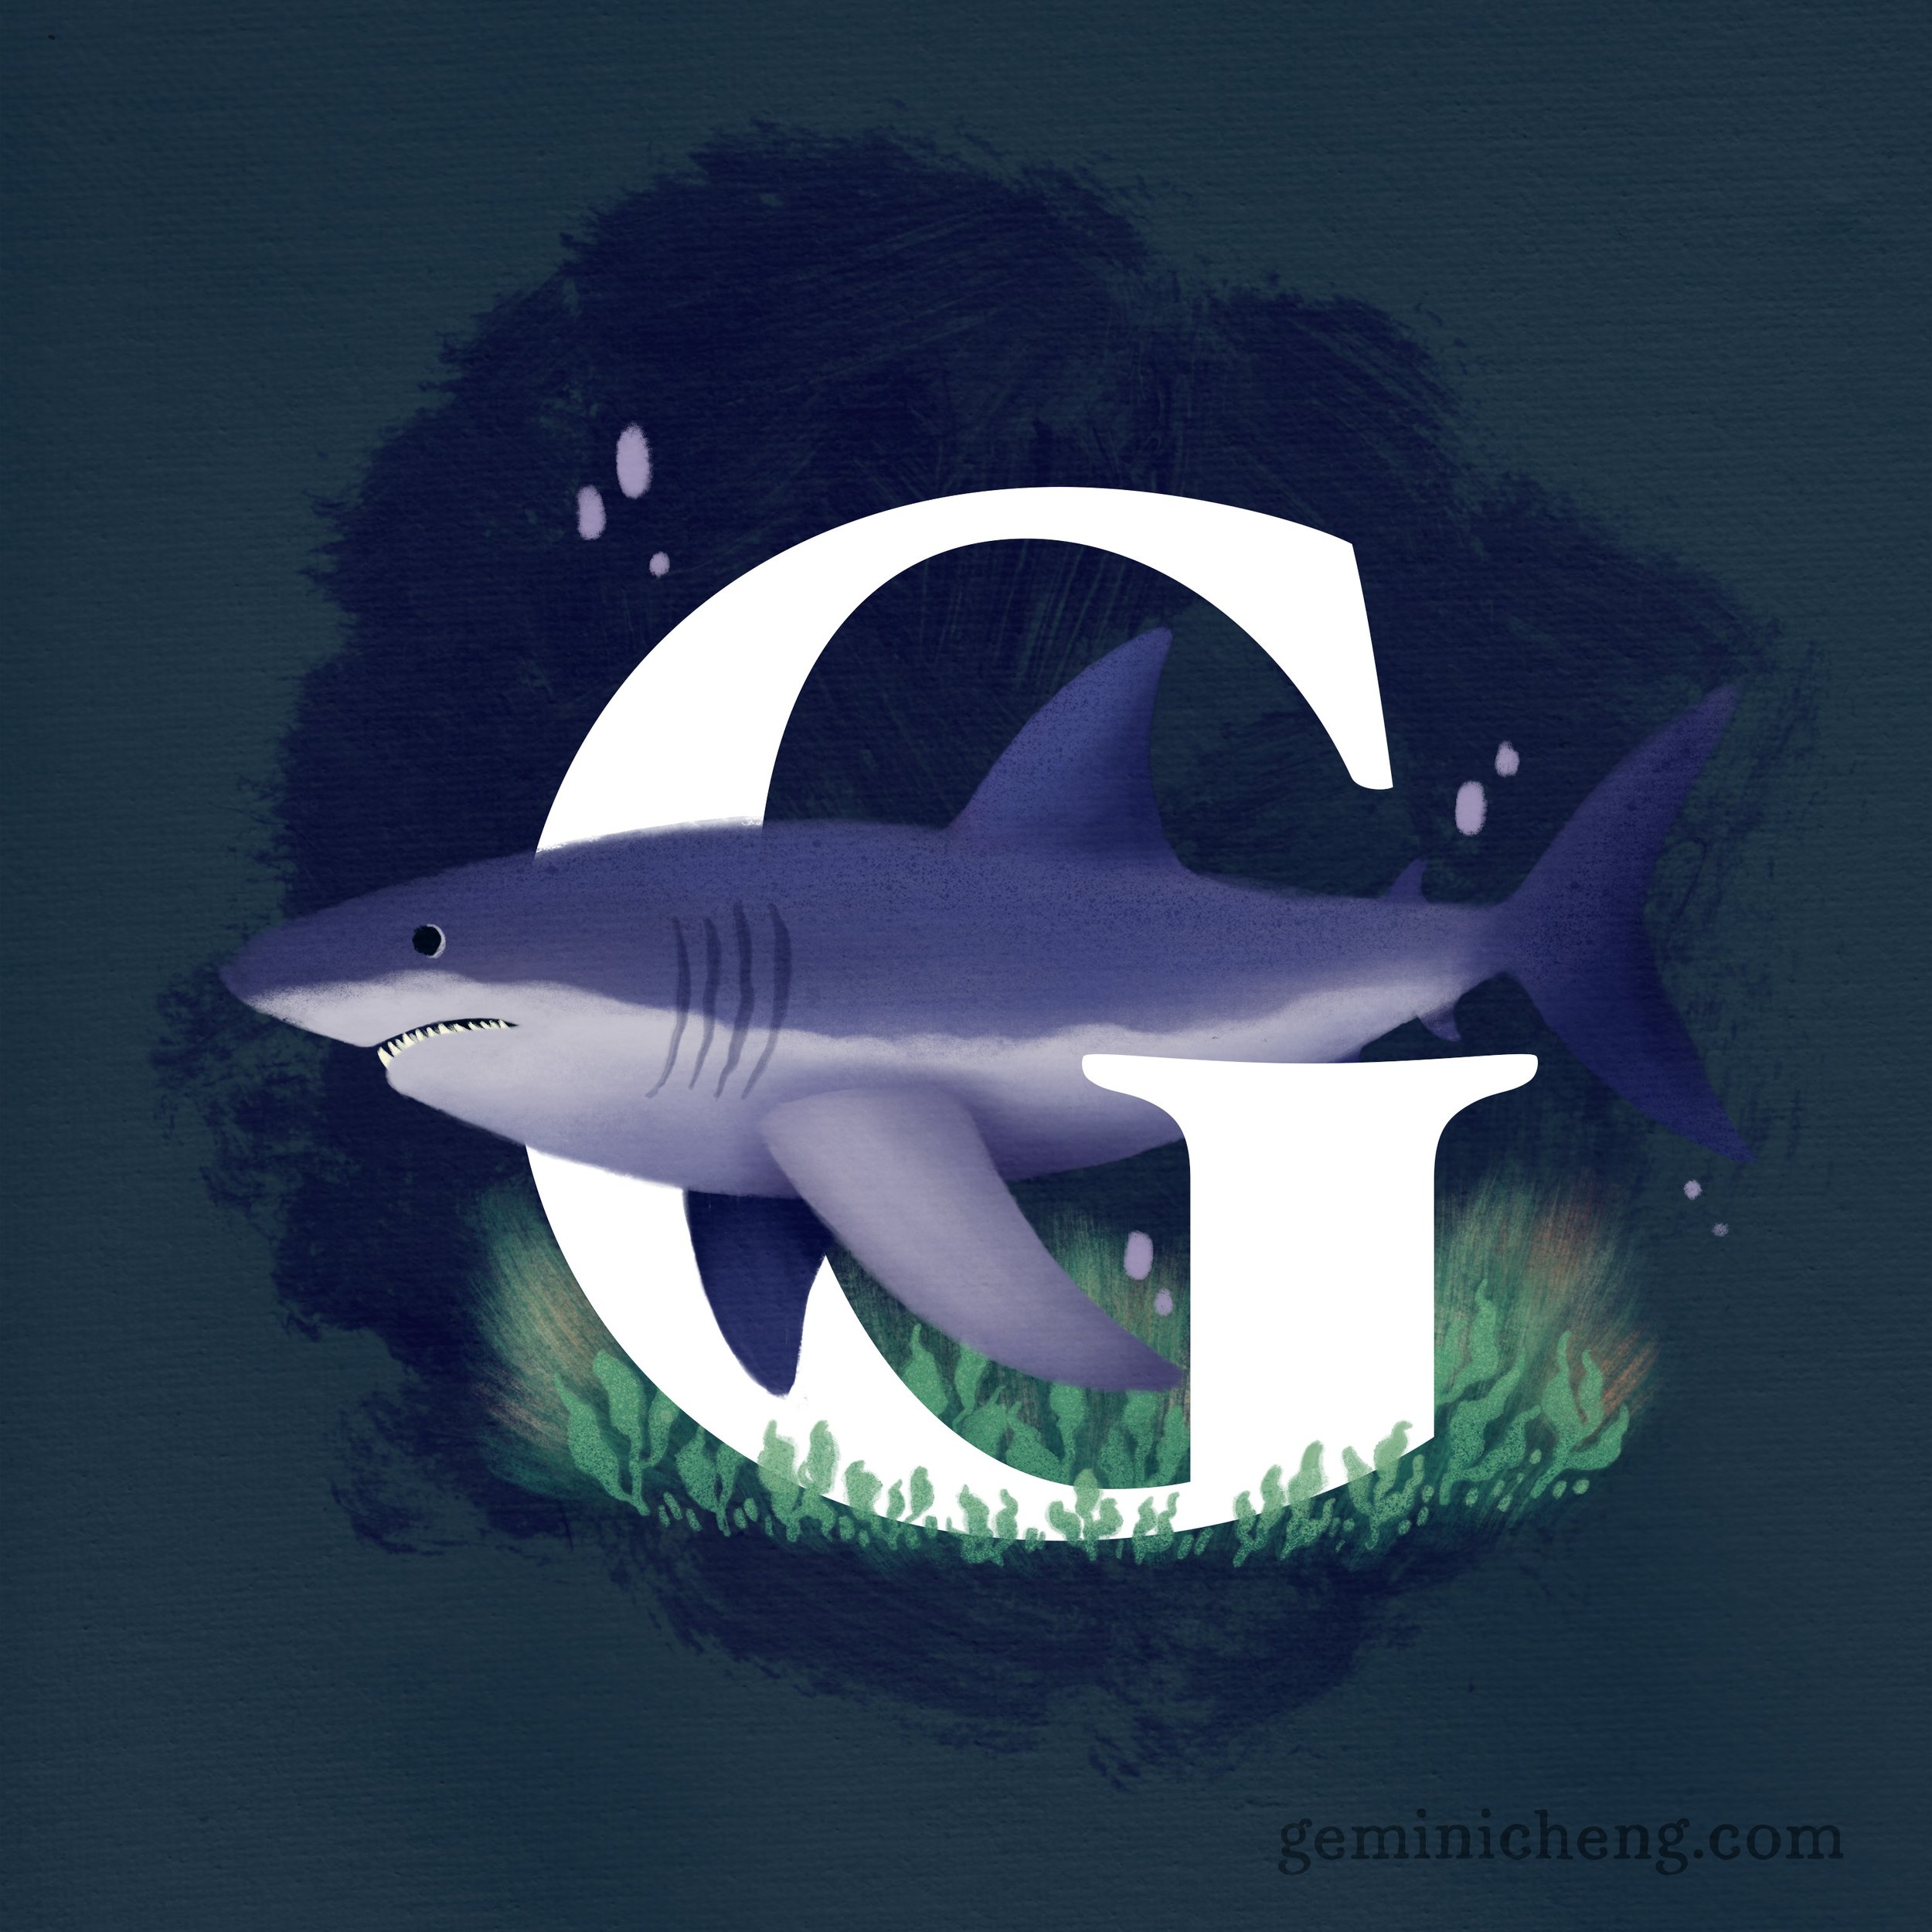 G for Great White Shark_1080.jpg